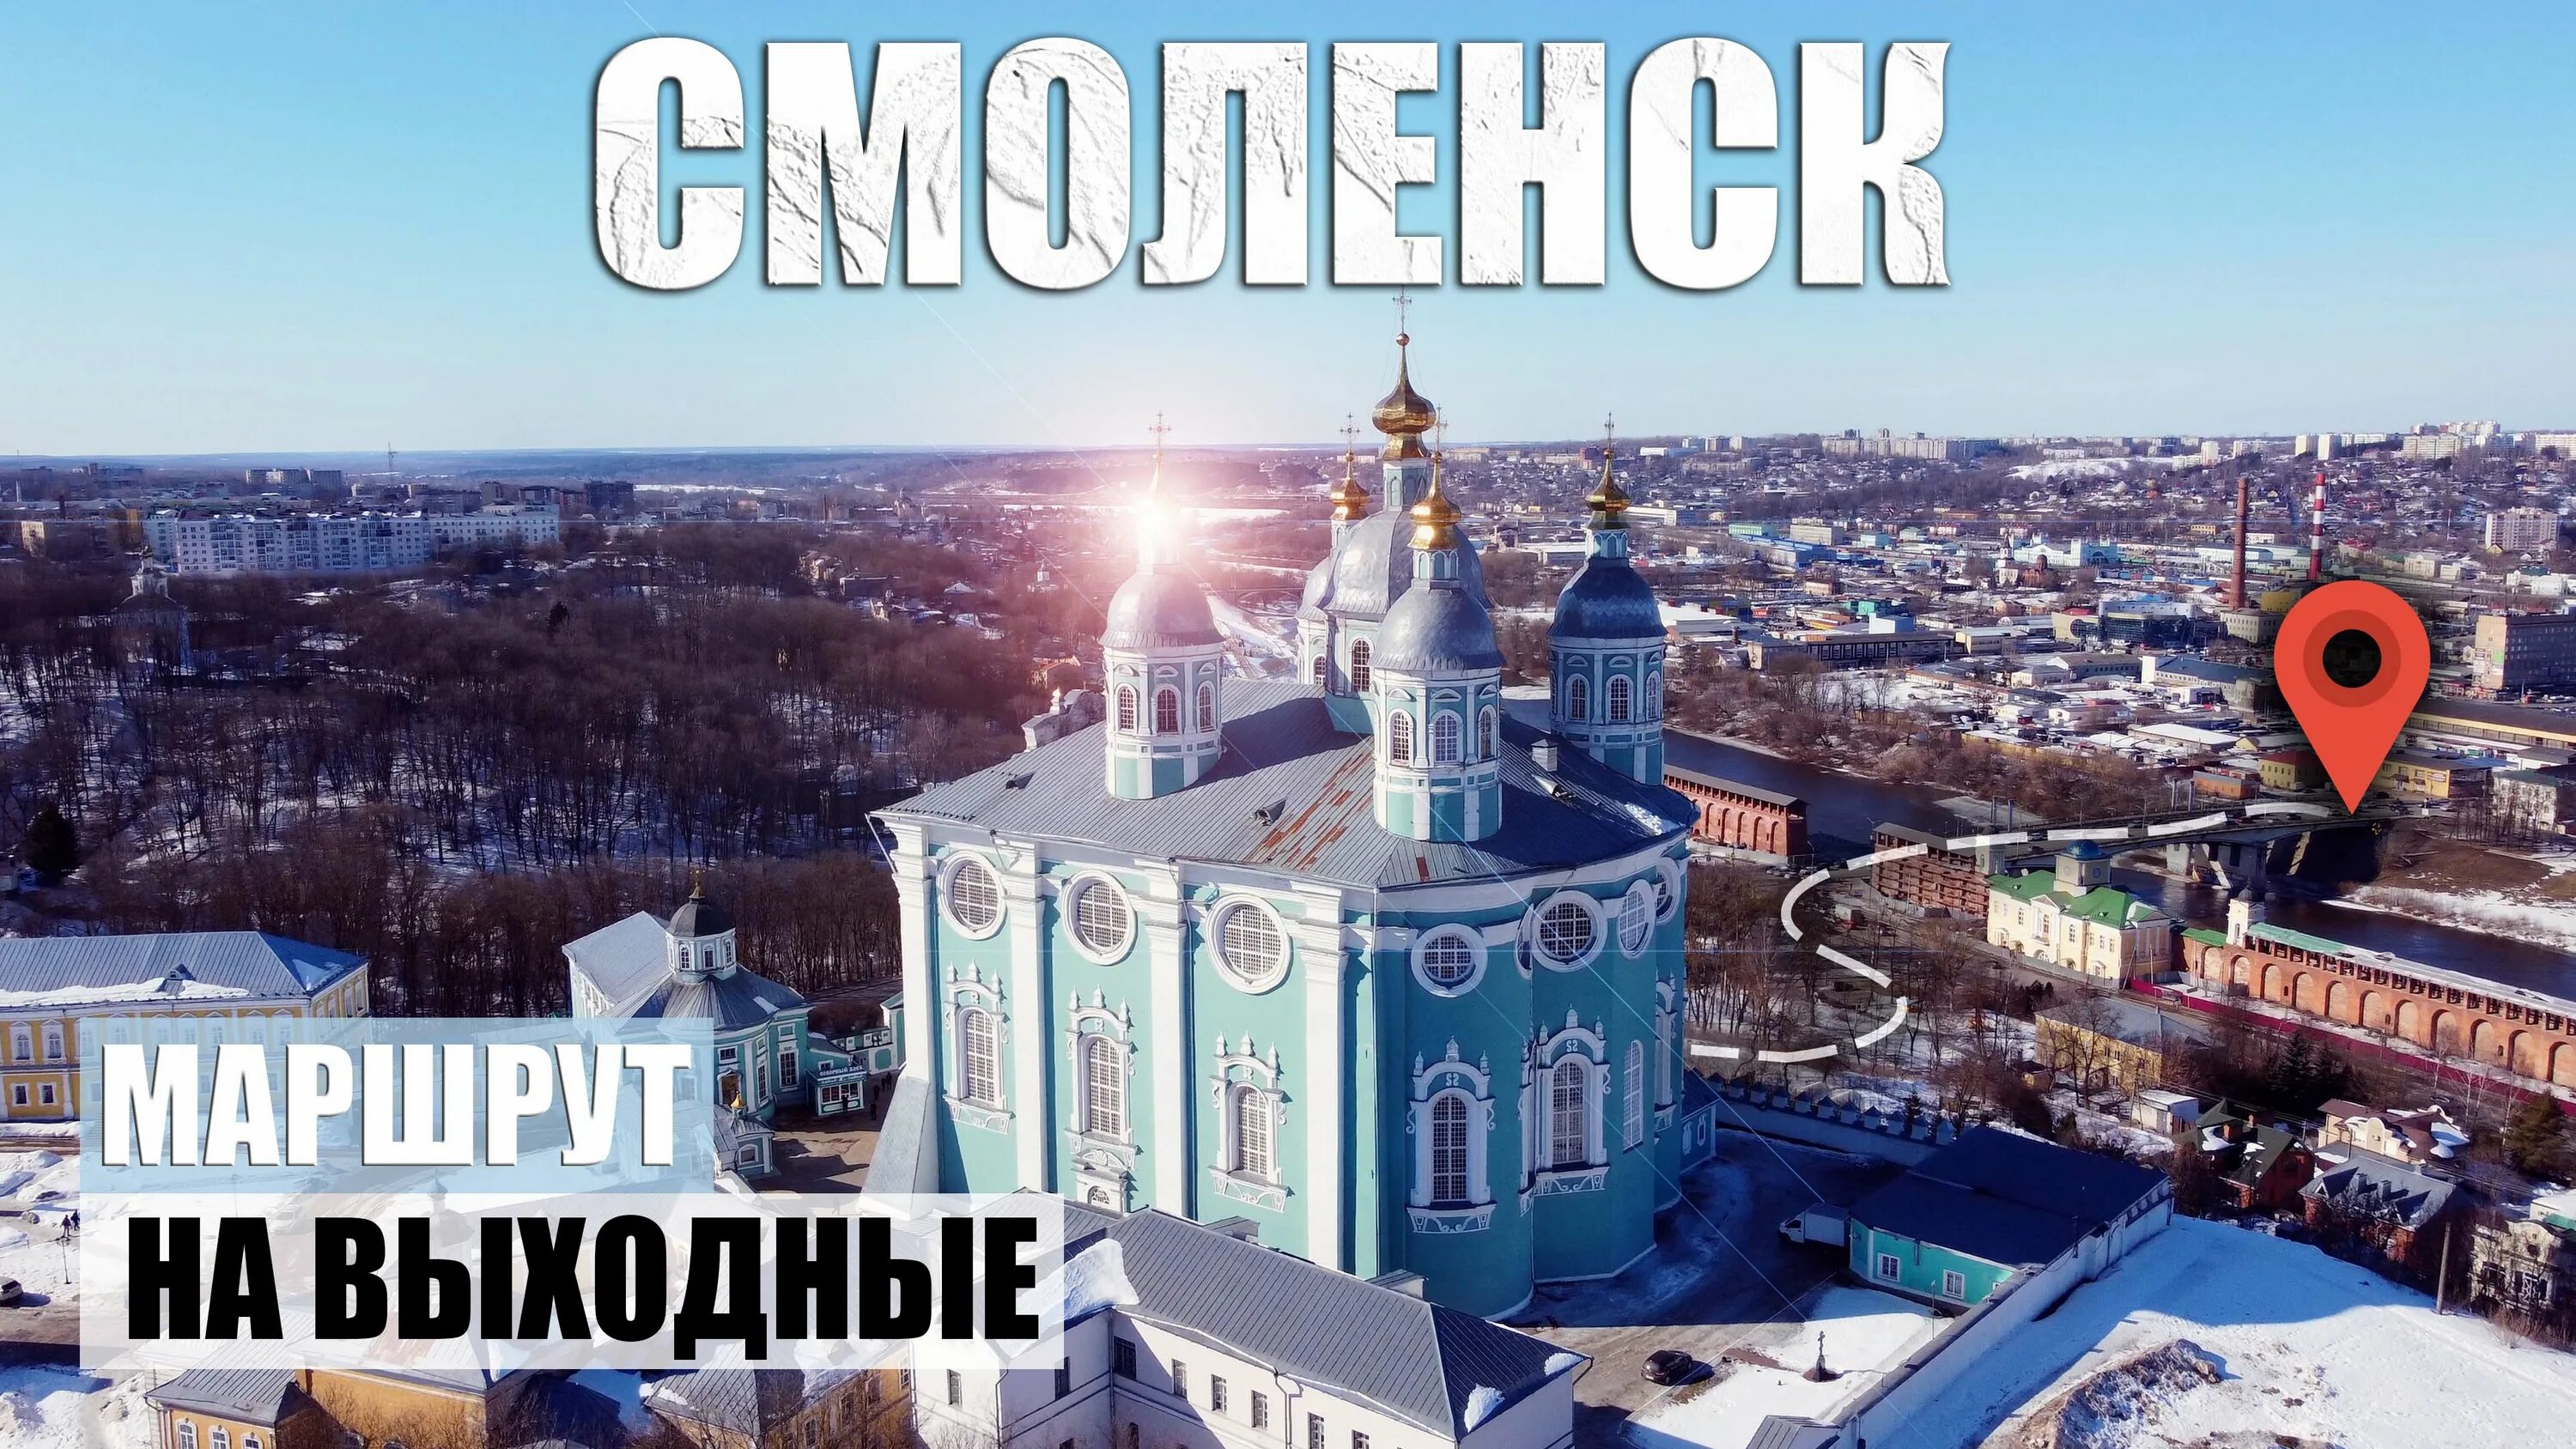 Смоленск где можно купить. Путешествие в Смоленск. Смоленск зимой. Выходные в Смоленске. Смоленск видео города.